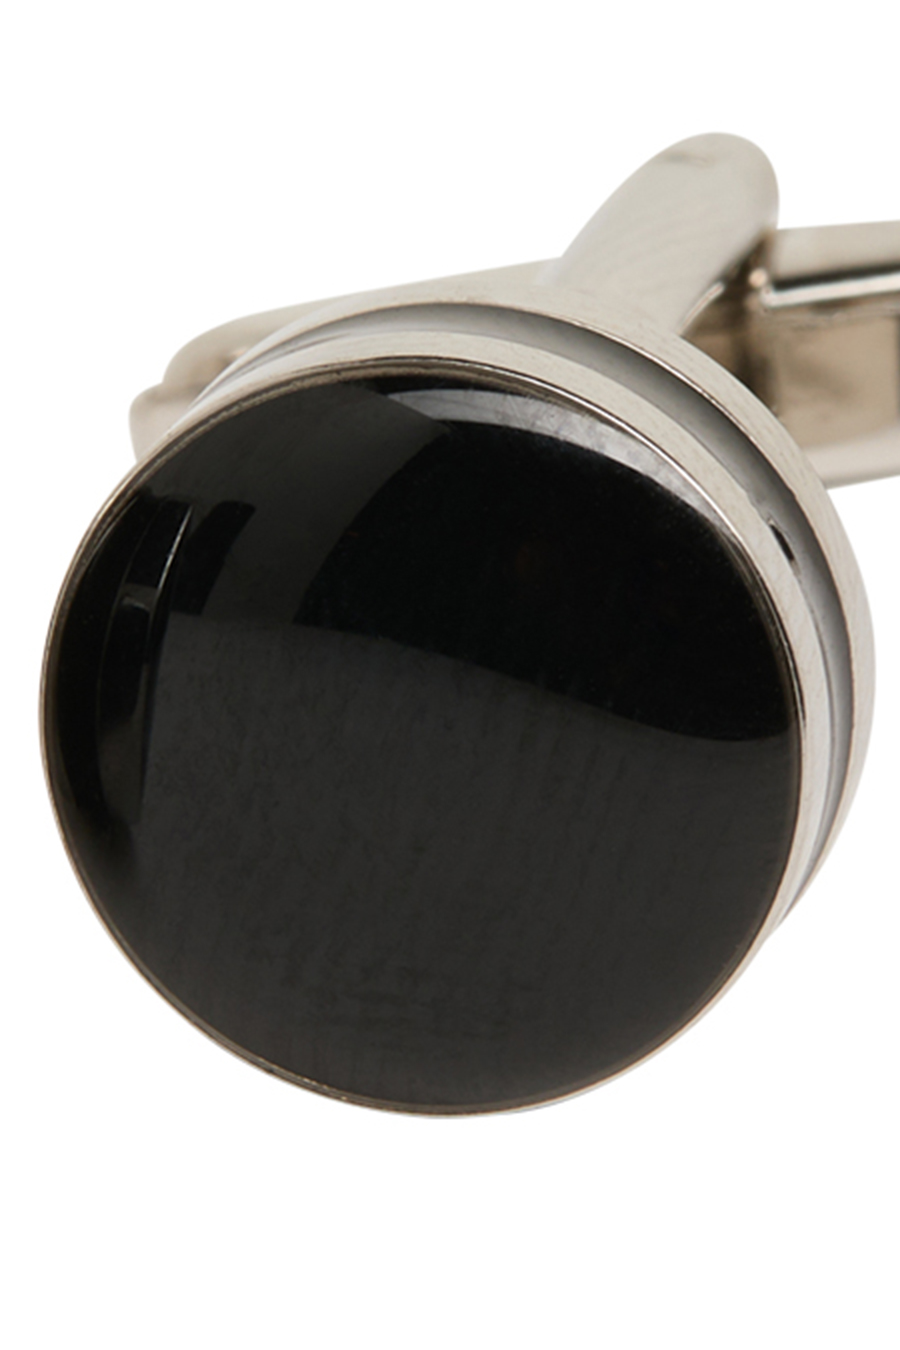 ETERNA Manschettenknopf runde Optik silber/schwarz | Manschettenknöpfe